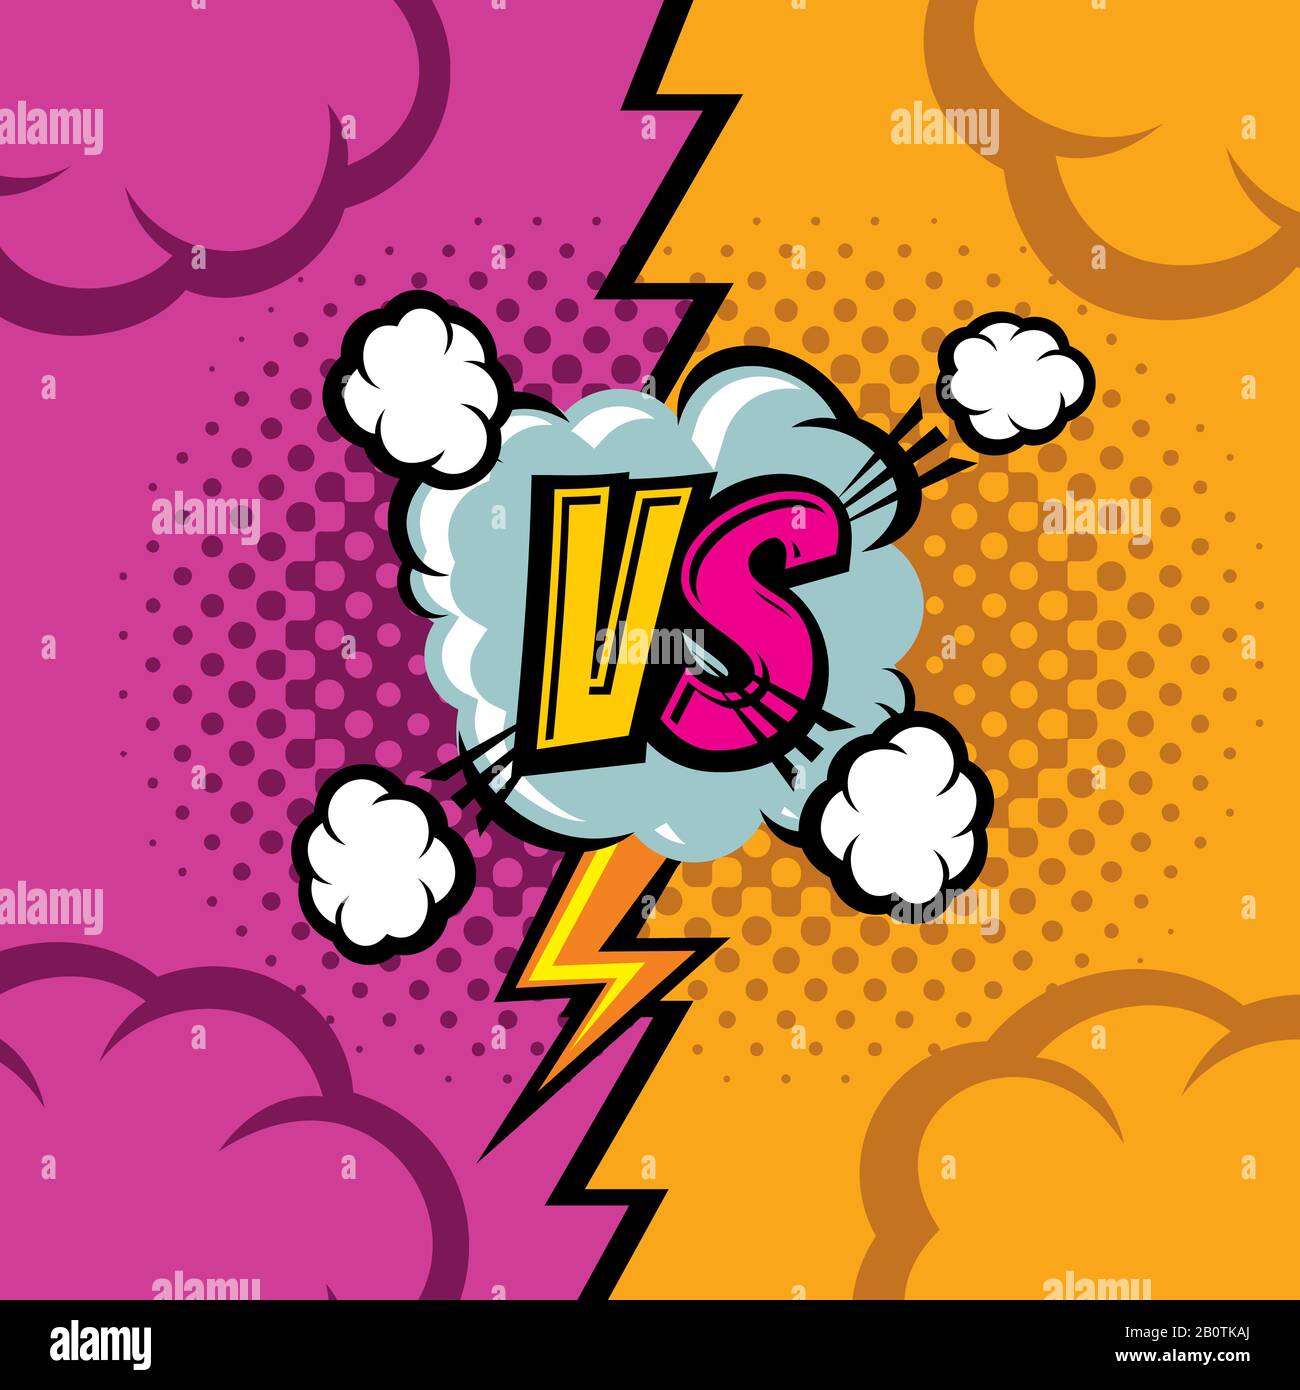 Im Gegensatz zu Vektor Comic-Comic Hintergrund. Kampfduell-Meisterschaft Retro Art. Wettbewerb und Konfrontation, Vergleich und Kampf-Illustration Stock Vektor